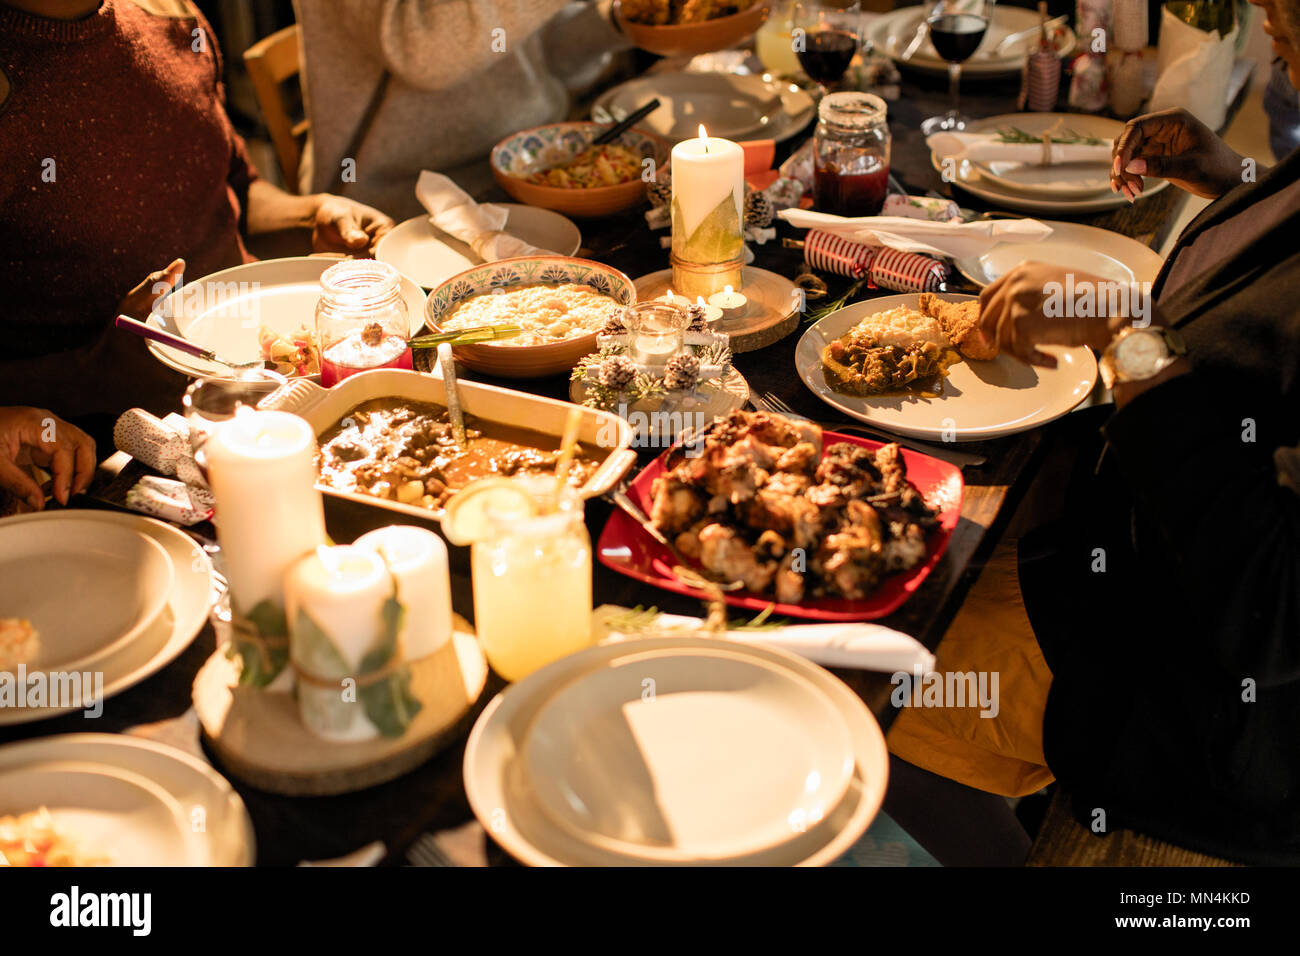 Comida Caribeña en la mesa de cena de Navidad Foto de stock